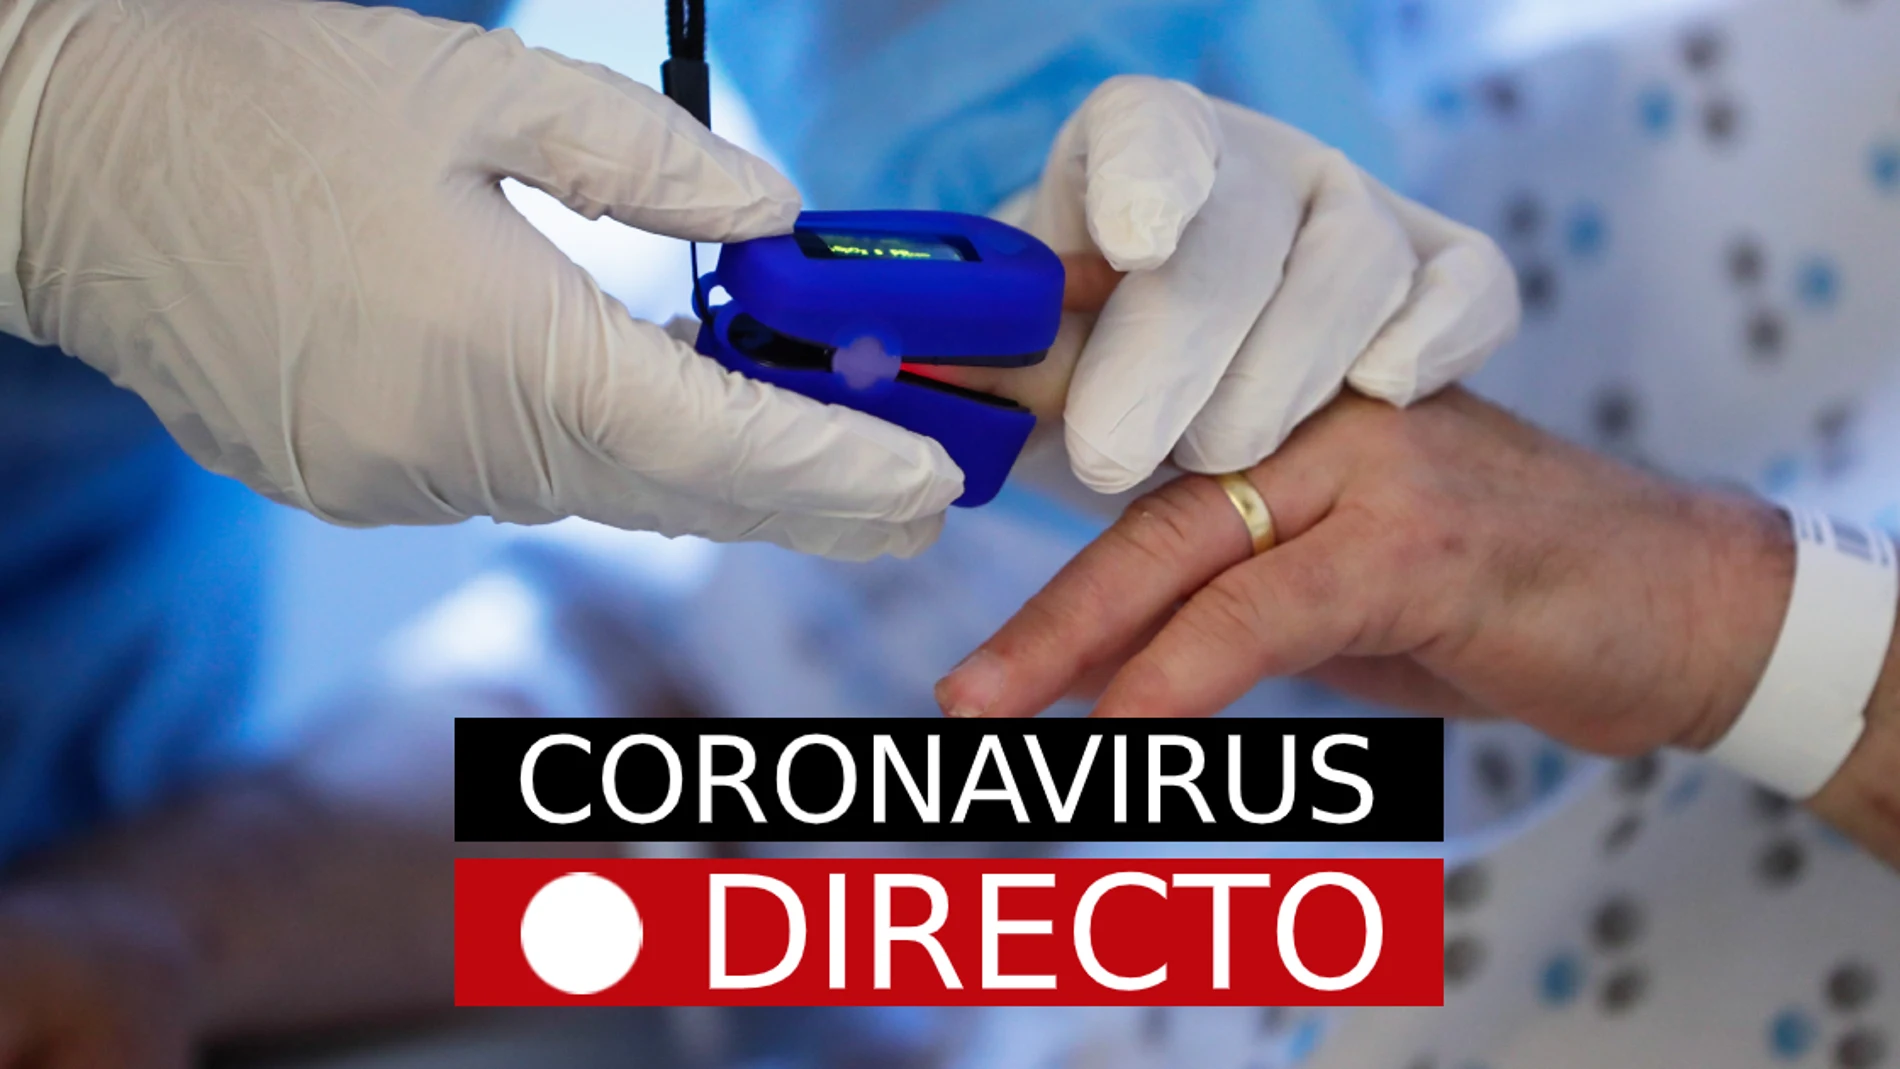 Coronavirus en Madrid y España: última hora de confinamientos, estado de alarma y casos de COVID-19, EN DIRECTO